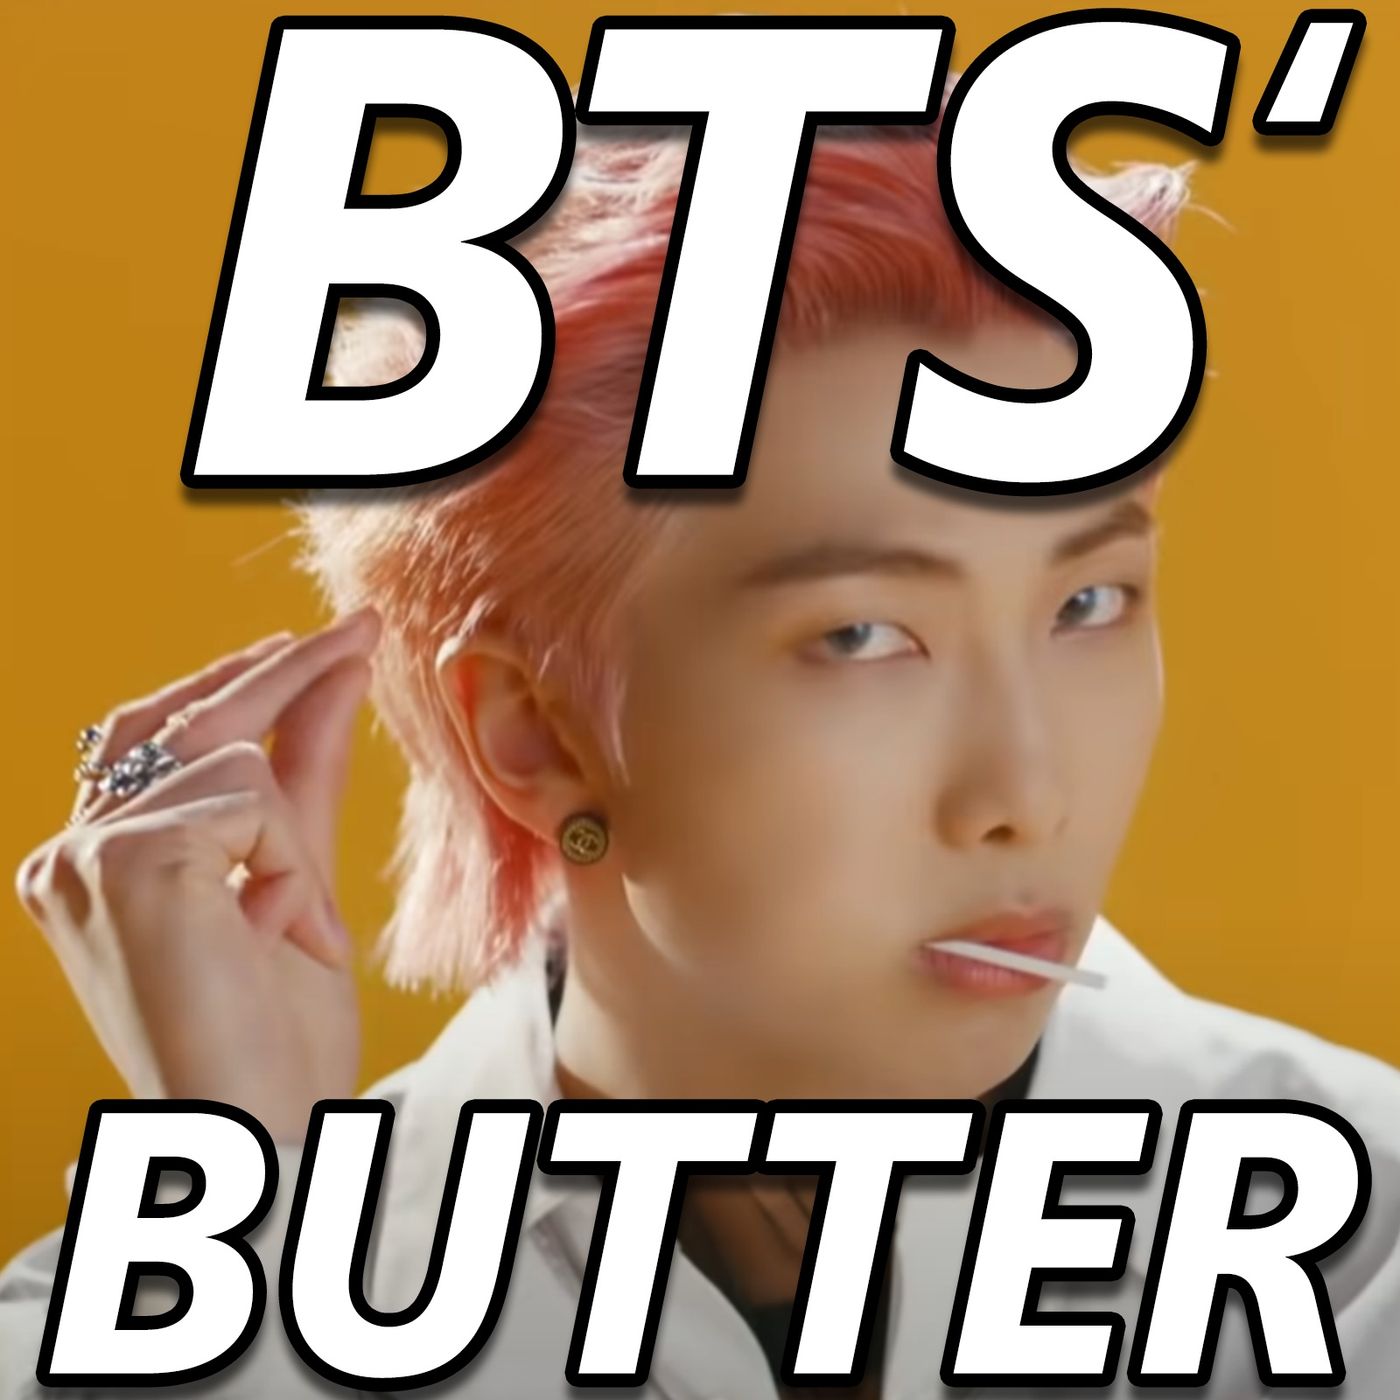 Let’s Discuss BTS’ ”Butter”